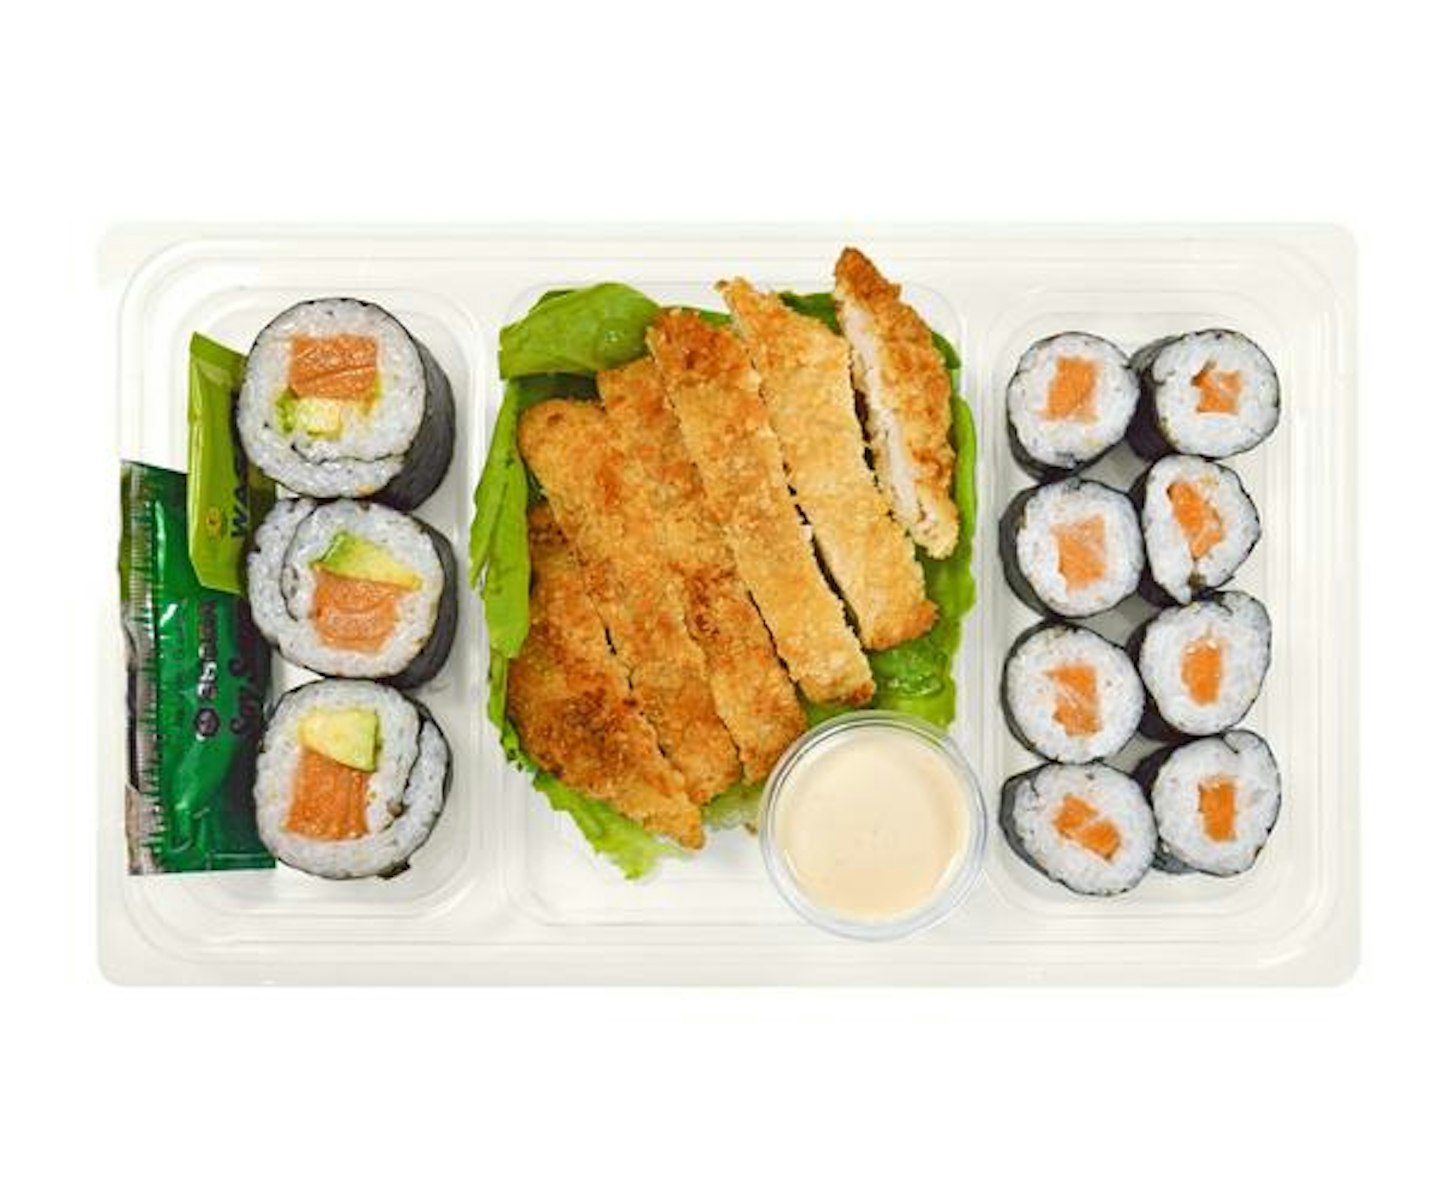 Tanpopo Salmon Sushi & Katsu Bento